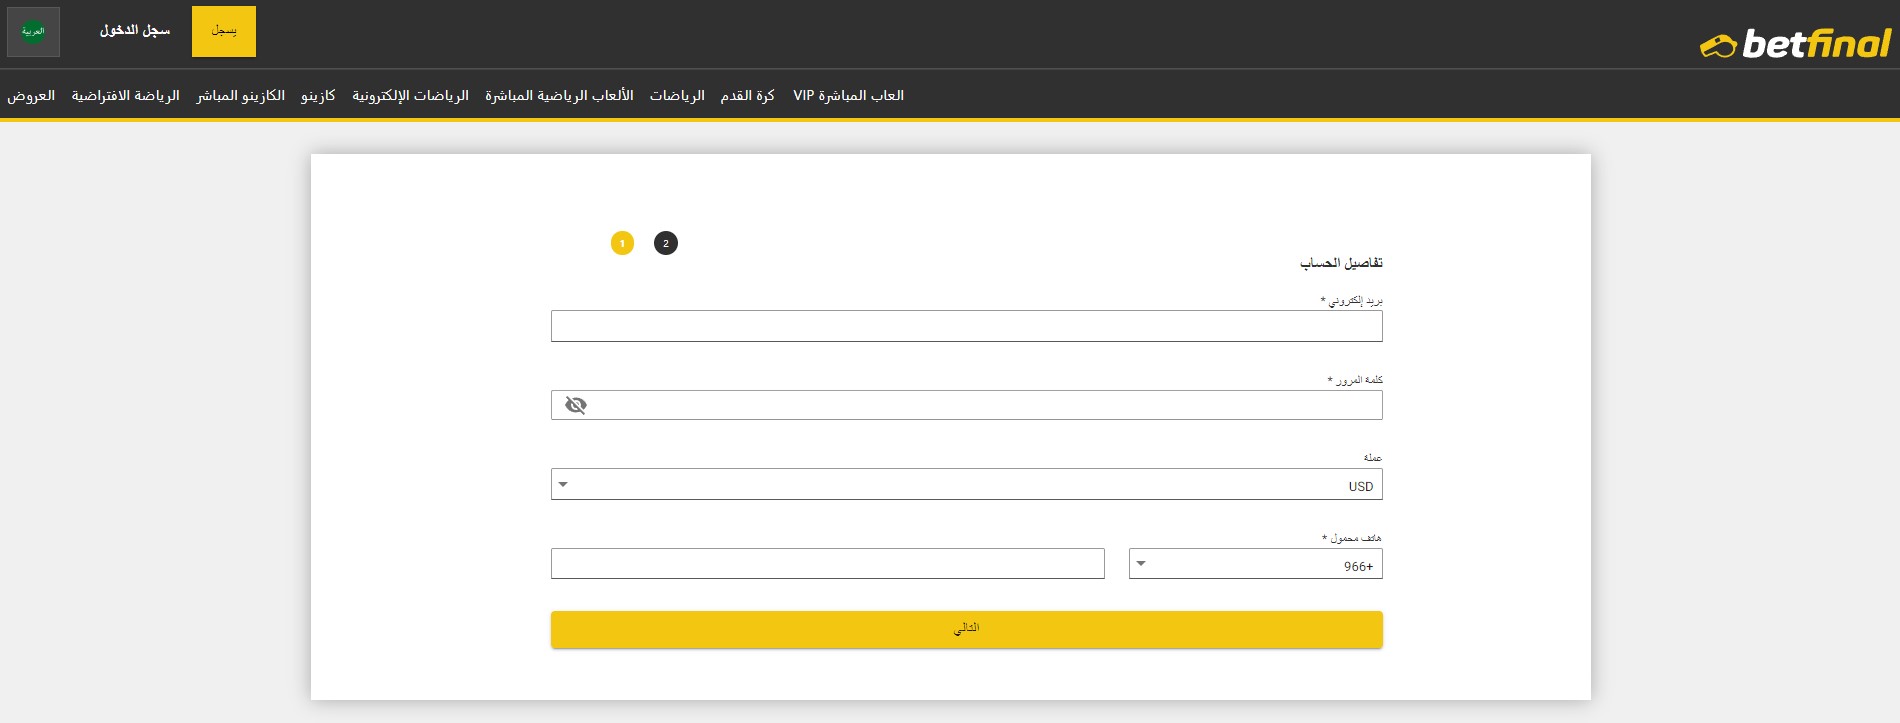 التسجيل في موقع betfinal عربي